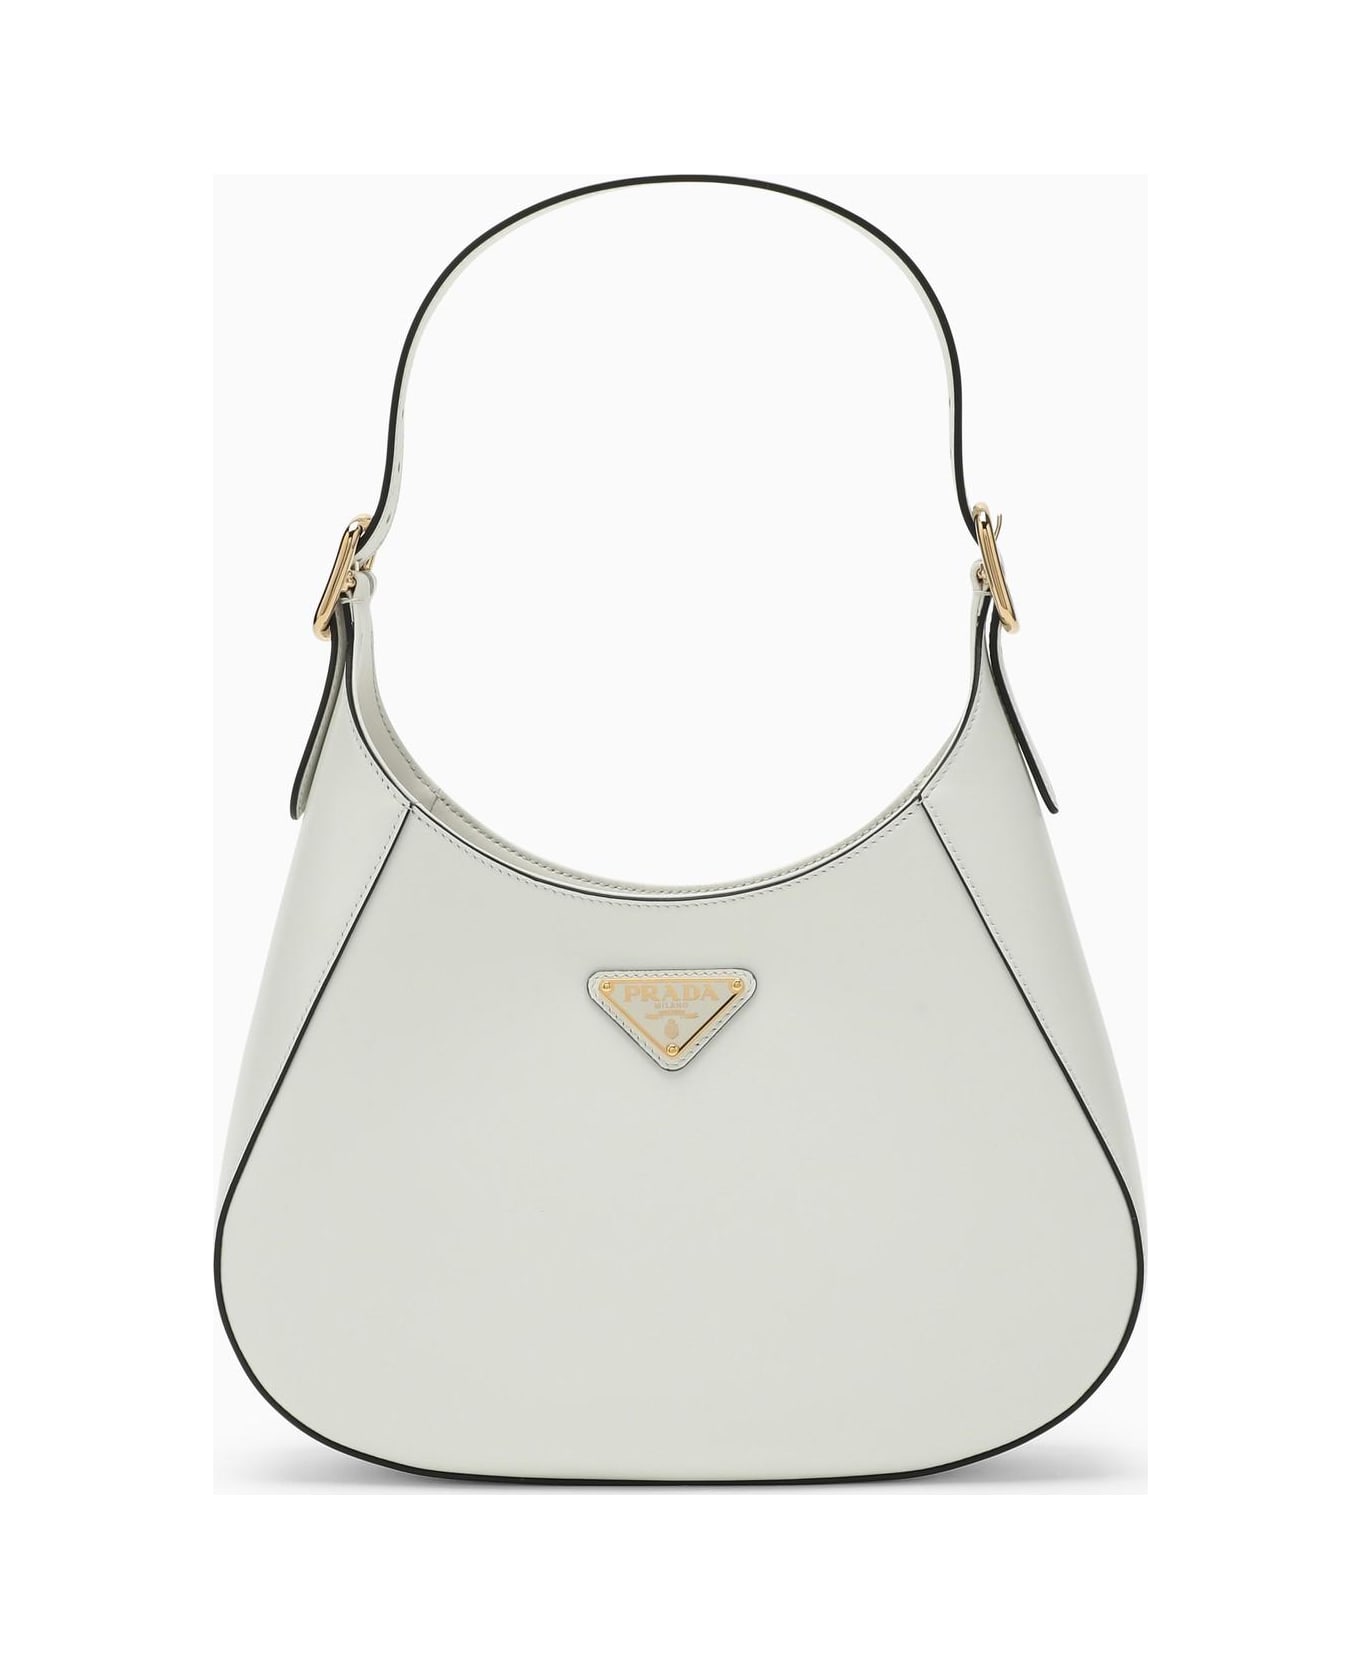 Prada Cleo White Leather Shoulder Bag - BIANCO N